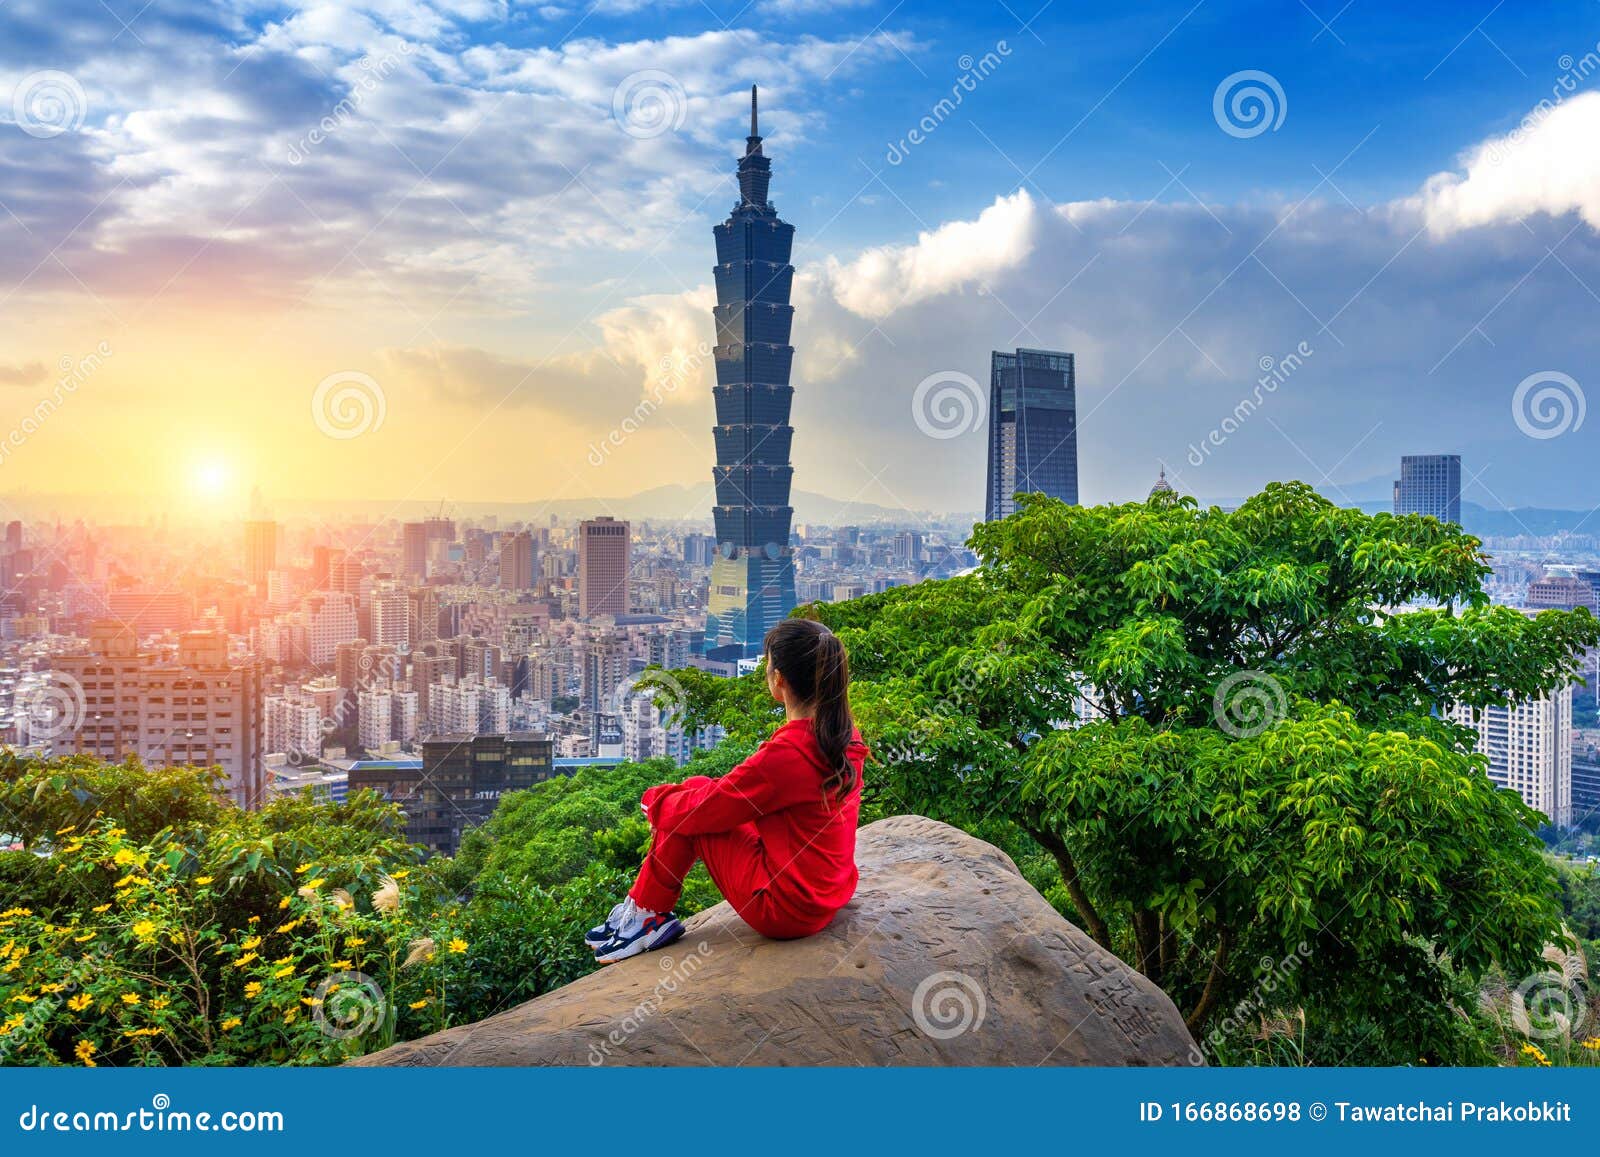 tourist woman enjoying view on mountains in taipei, taiwan.